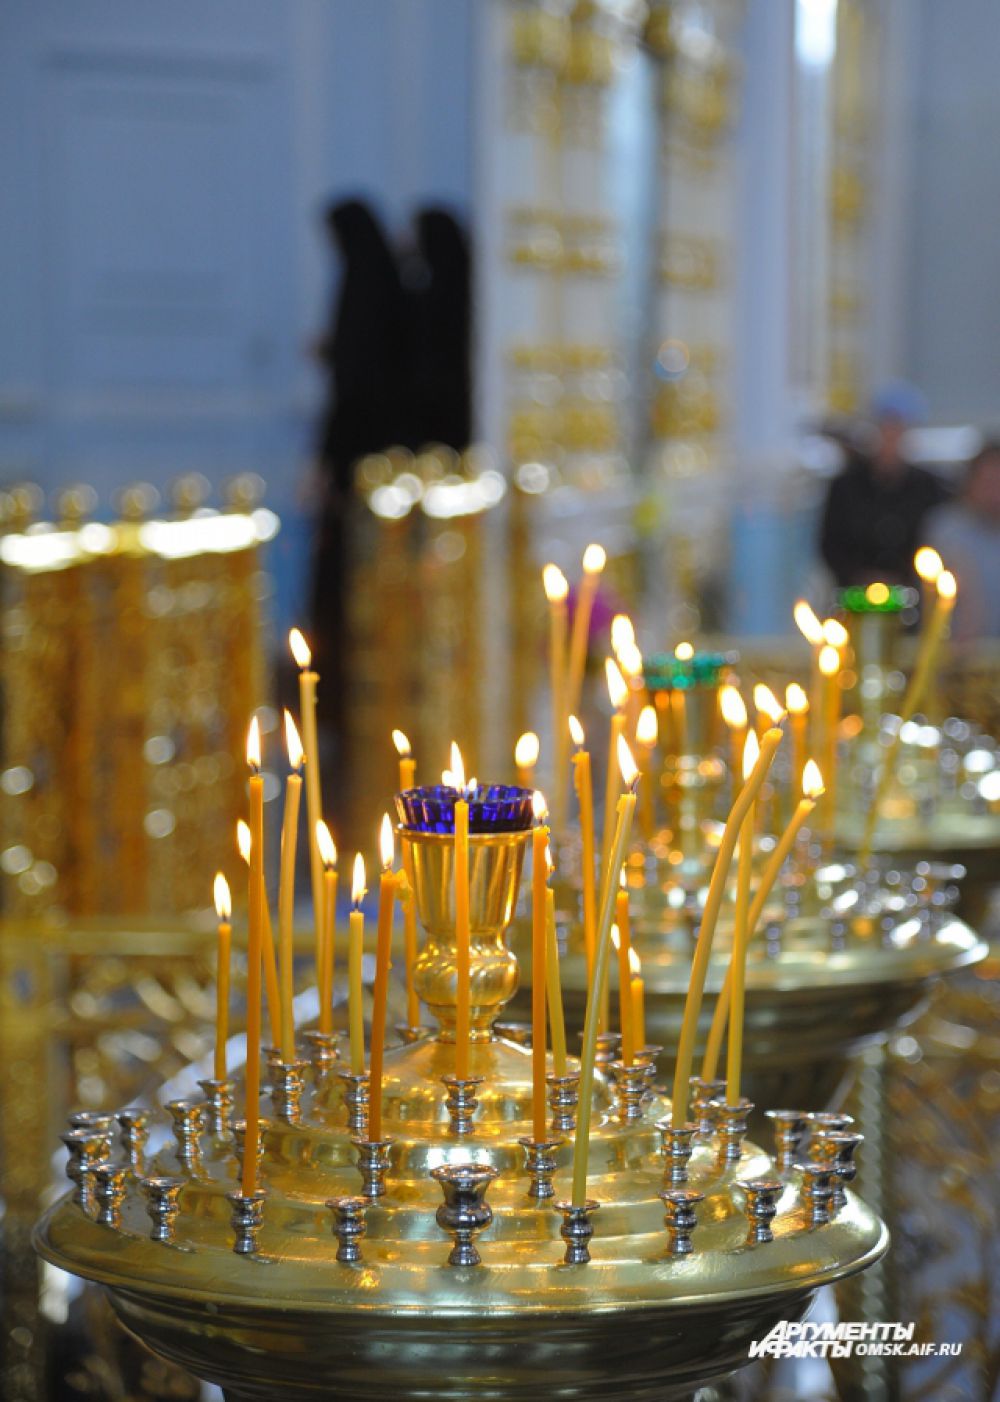 Крестный ход в честь Дня Крещения Руси в Омске.